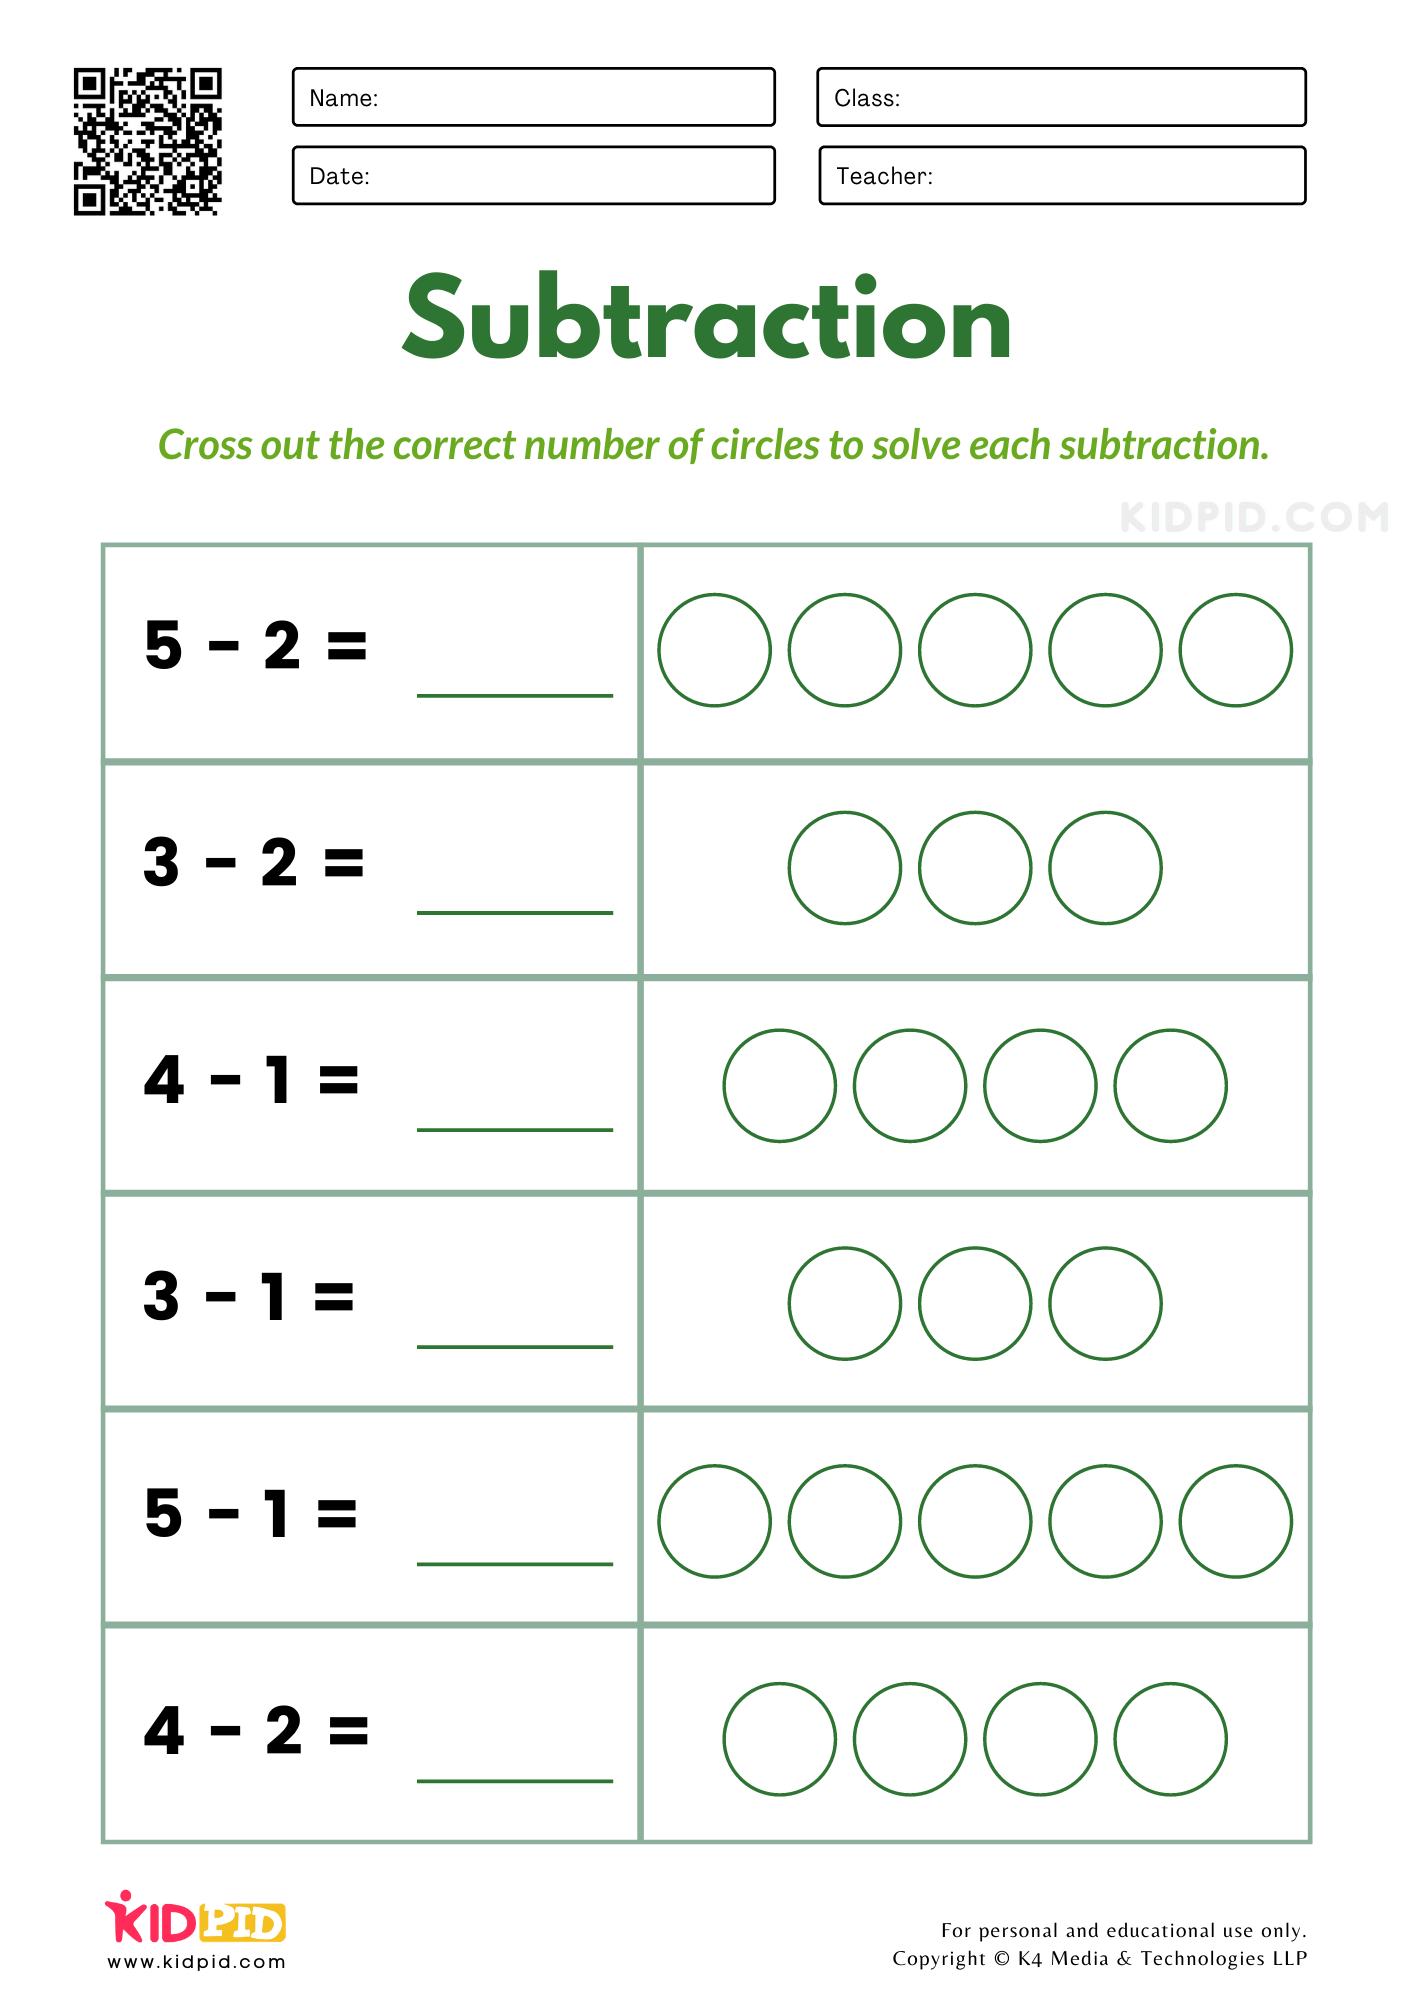 Subtraction Worksheets for Kindergarten - Kidpid Regarding Subtraction Worksheet For Kindergarten